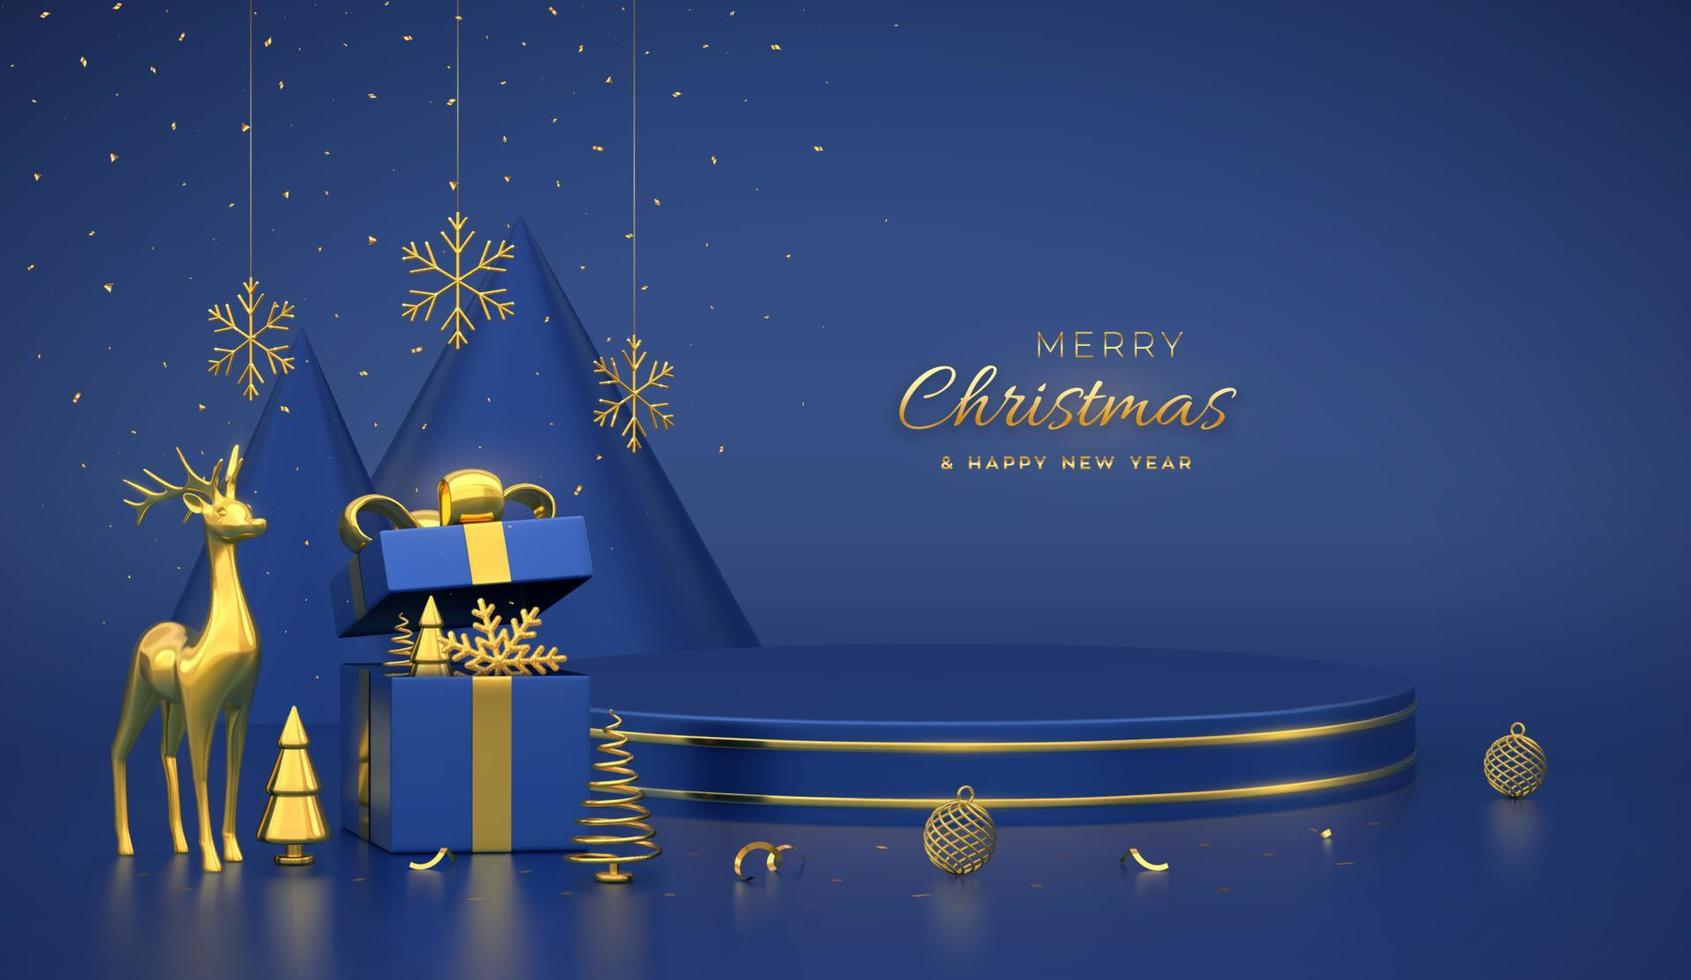 escena navideña y plataforma redonda 3d con círculo dorado sobre fondo azul. pedestal en blanco con ciervos, copos de nieve, bolas, caja de regalo, pino en forma de cono metálico dorado, abetos. ilustración vectorial vector